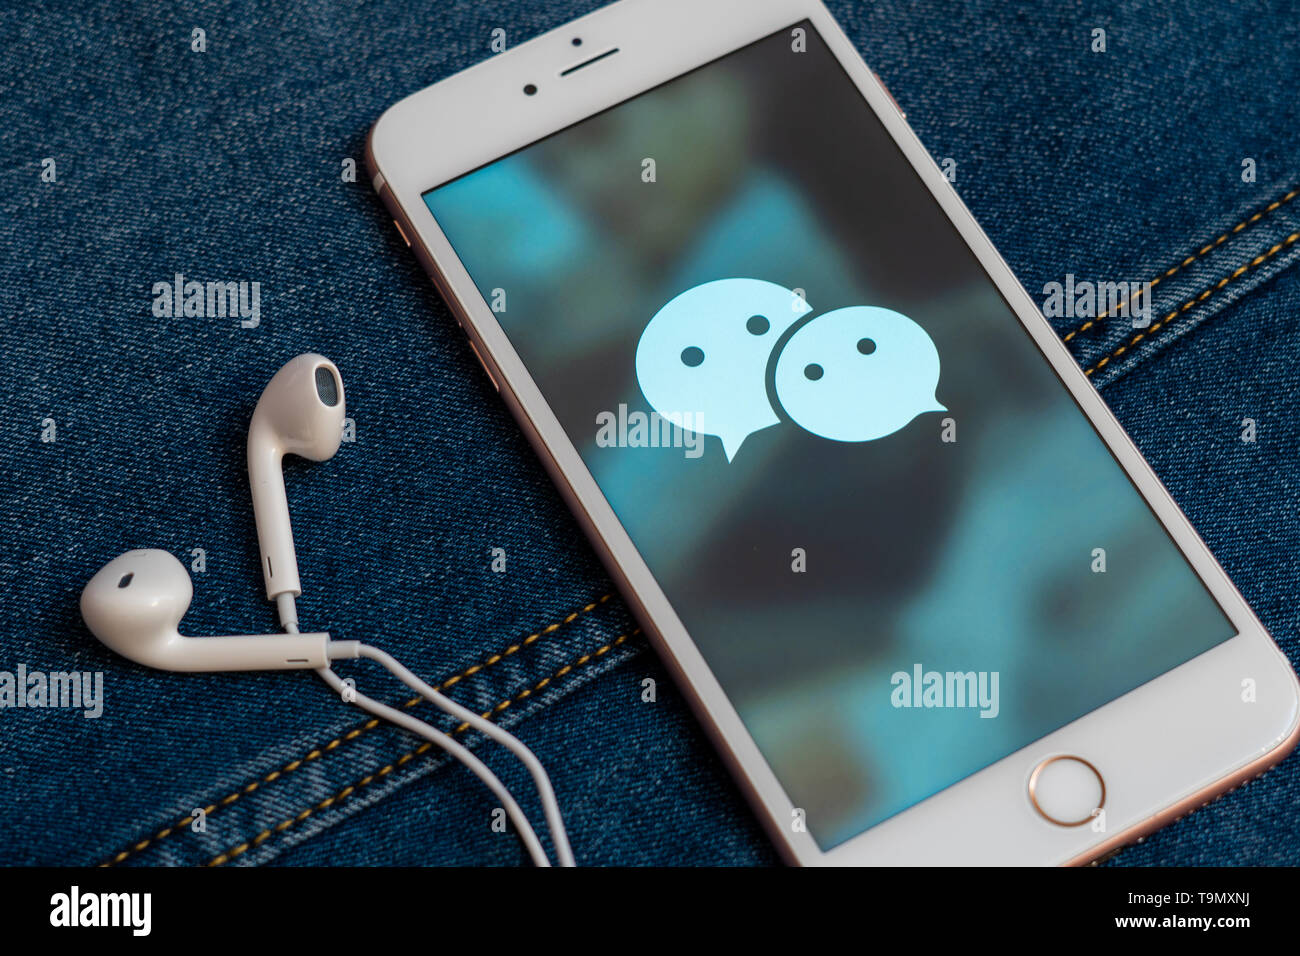 Weißes iPhone mit Logo von social media WeChat aus China auf dem Bildschirm. Social media Symbol. Denim Jeans Hintergrund. Marketing oder Business Konzept Stockfoto